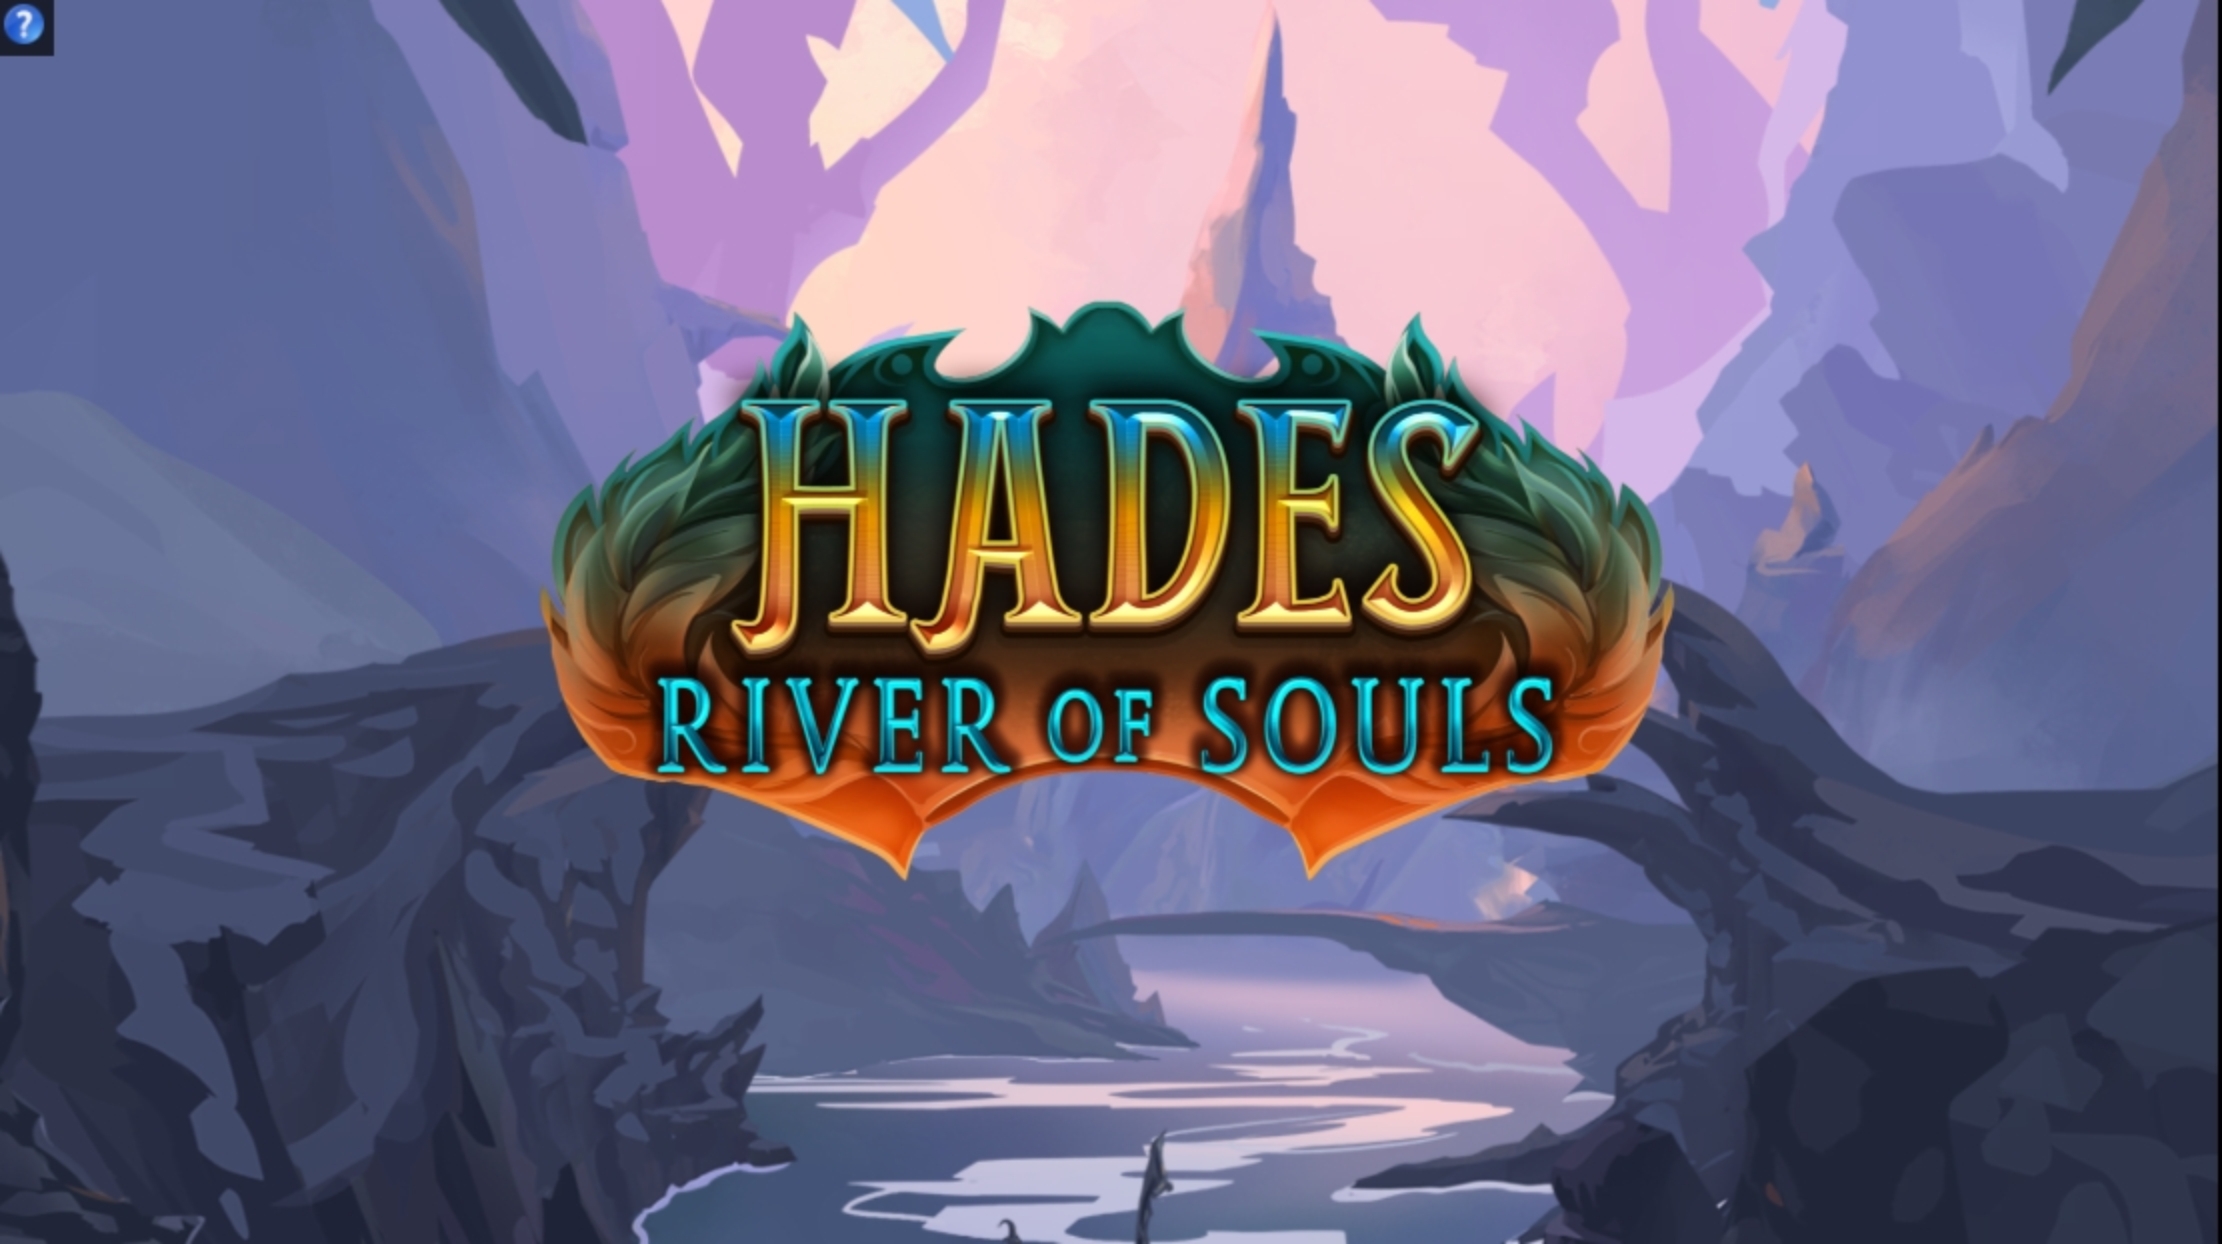 Play Hades River of Souls Free Casino Slot Game by Fantasma Games